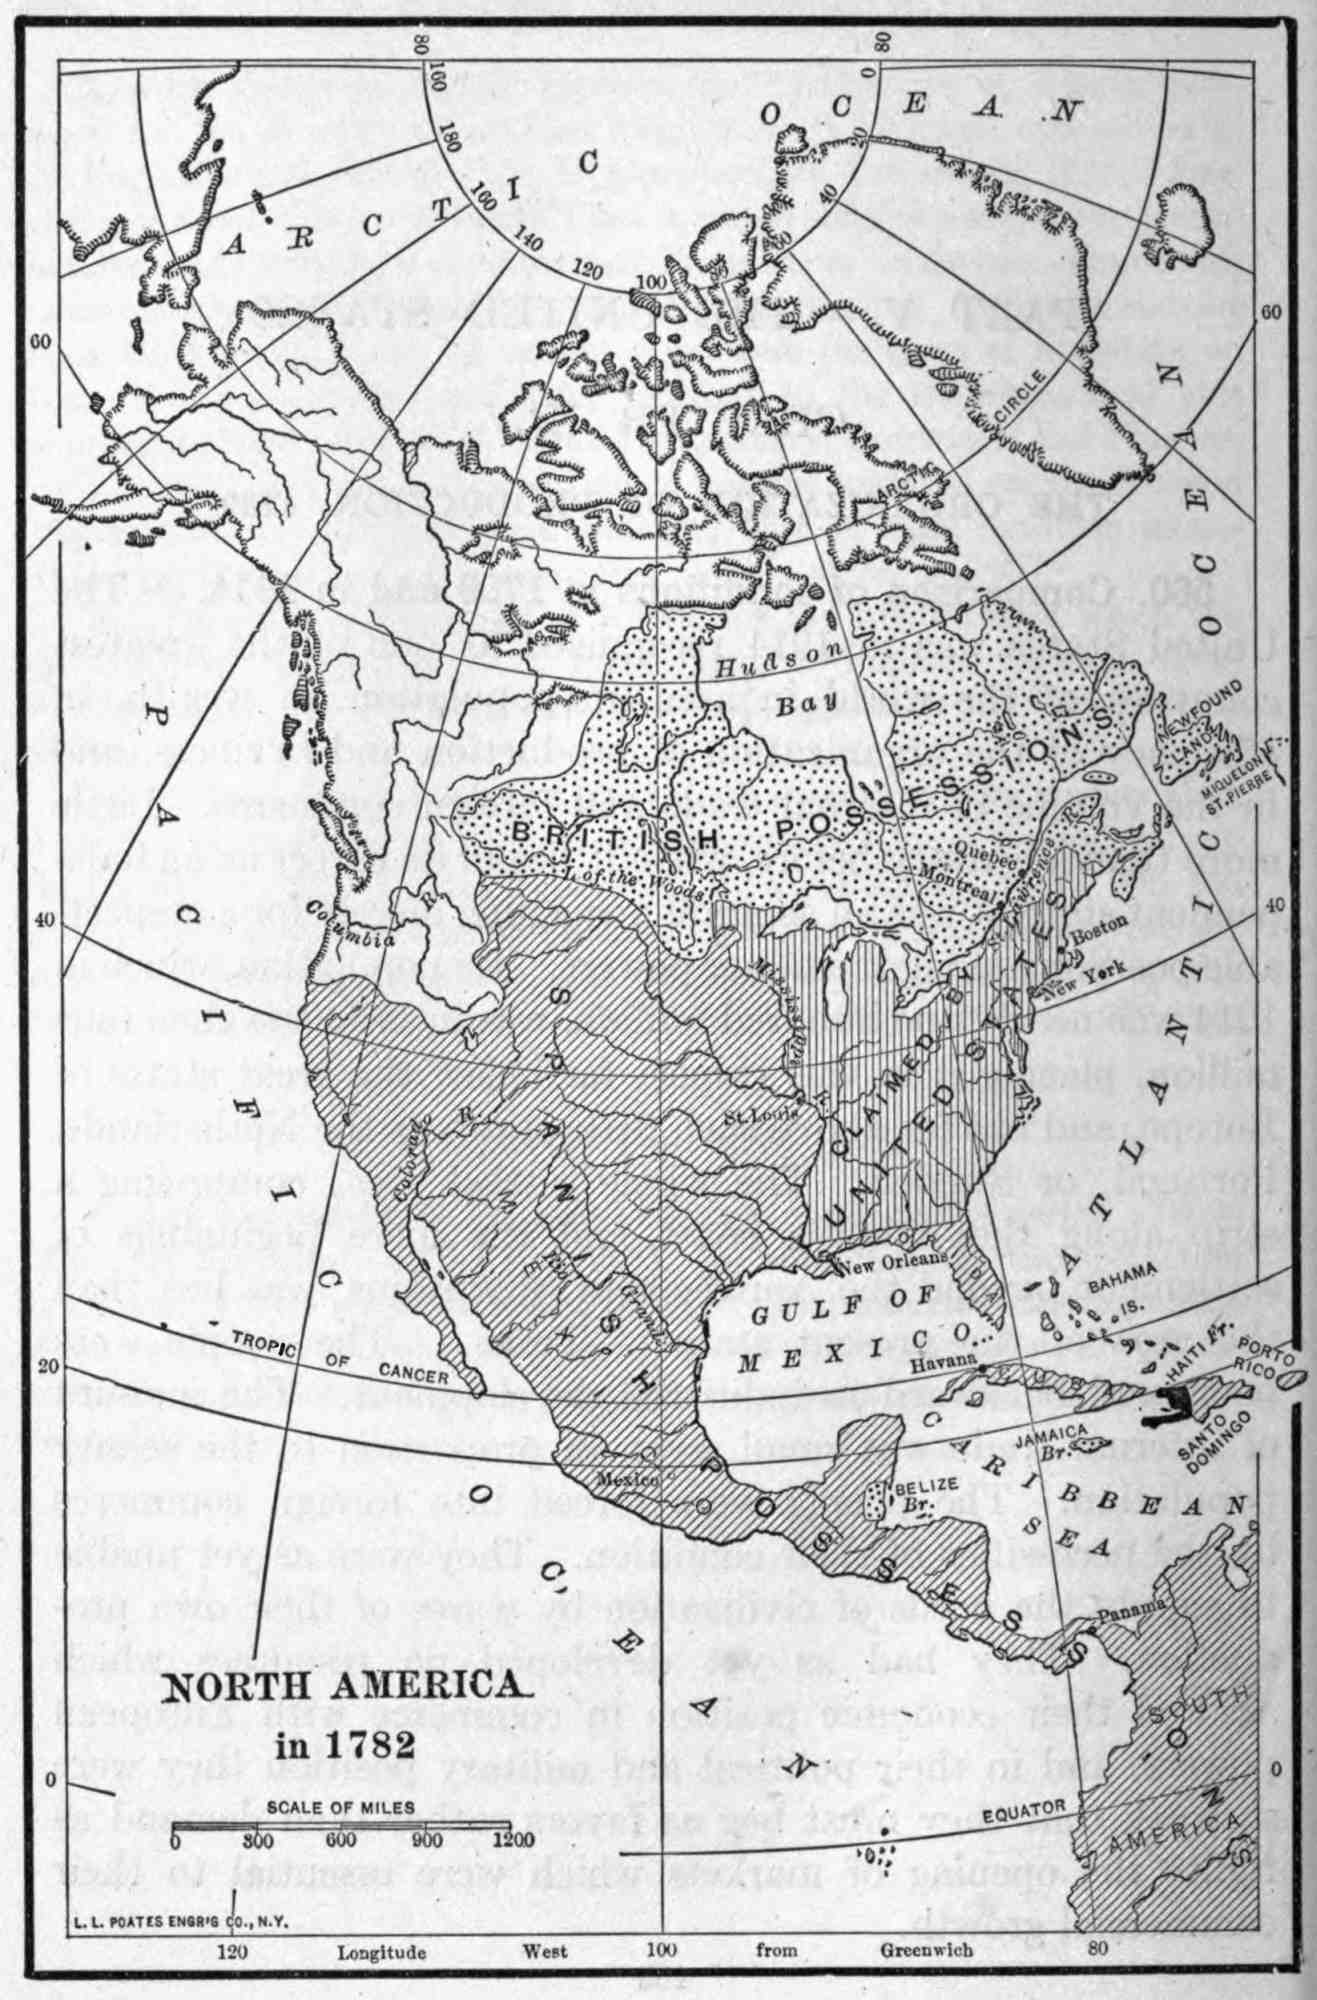 north america in 1782